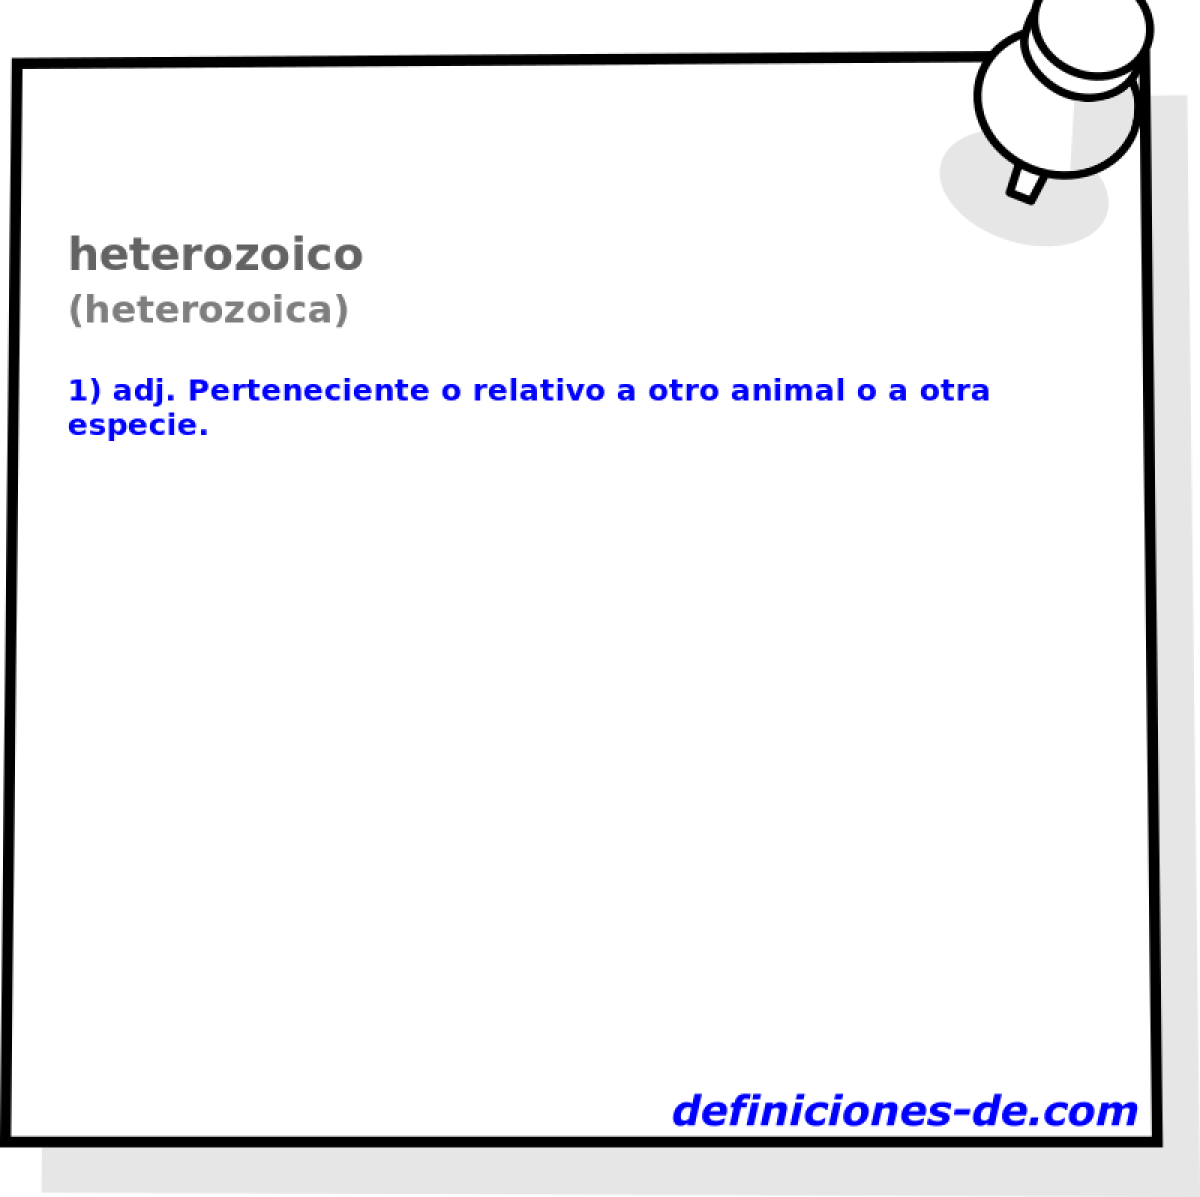 heterozoico (heterozoica)